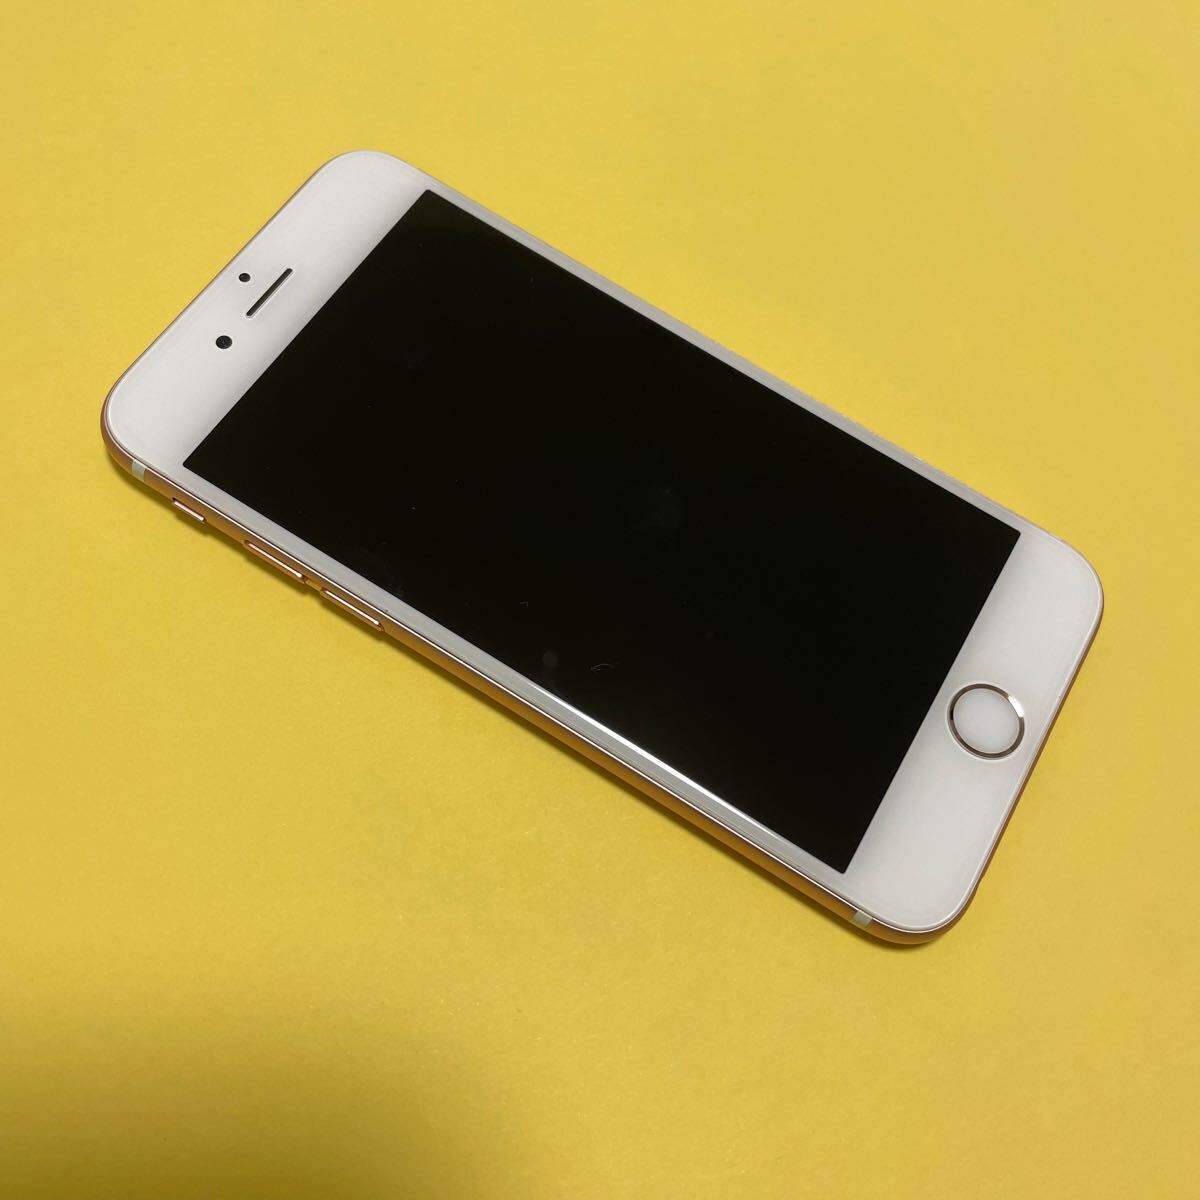 iPhone6s 32GB  83%  ローズゴールド  アイフォン  Apple  アップル    A1688 SIMロック解除済  MN122J/A 15.8.2の画像2